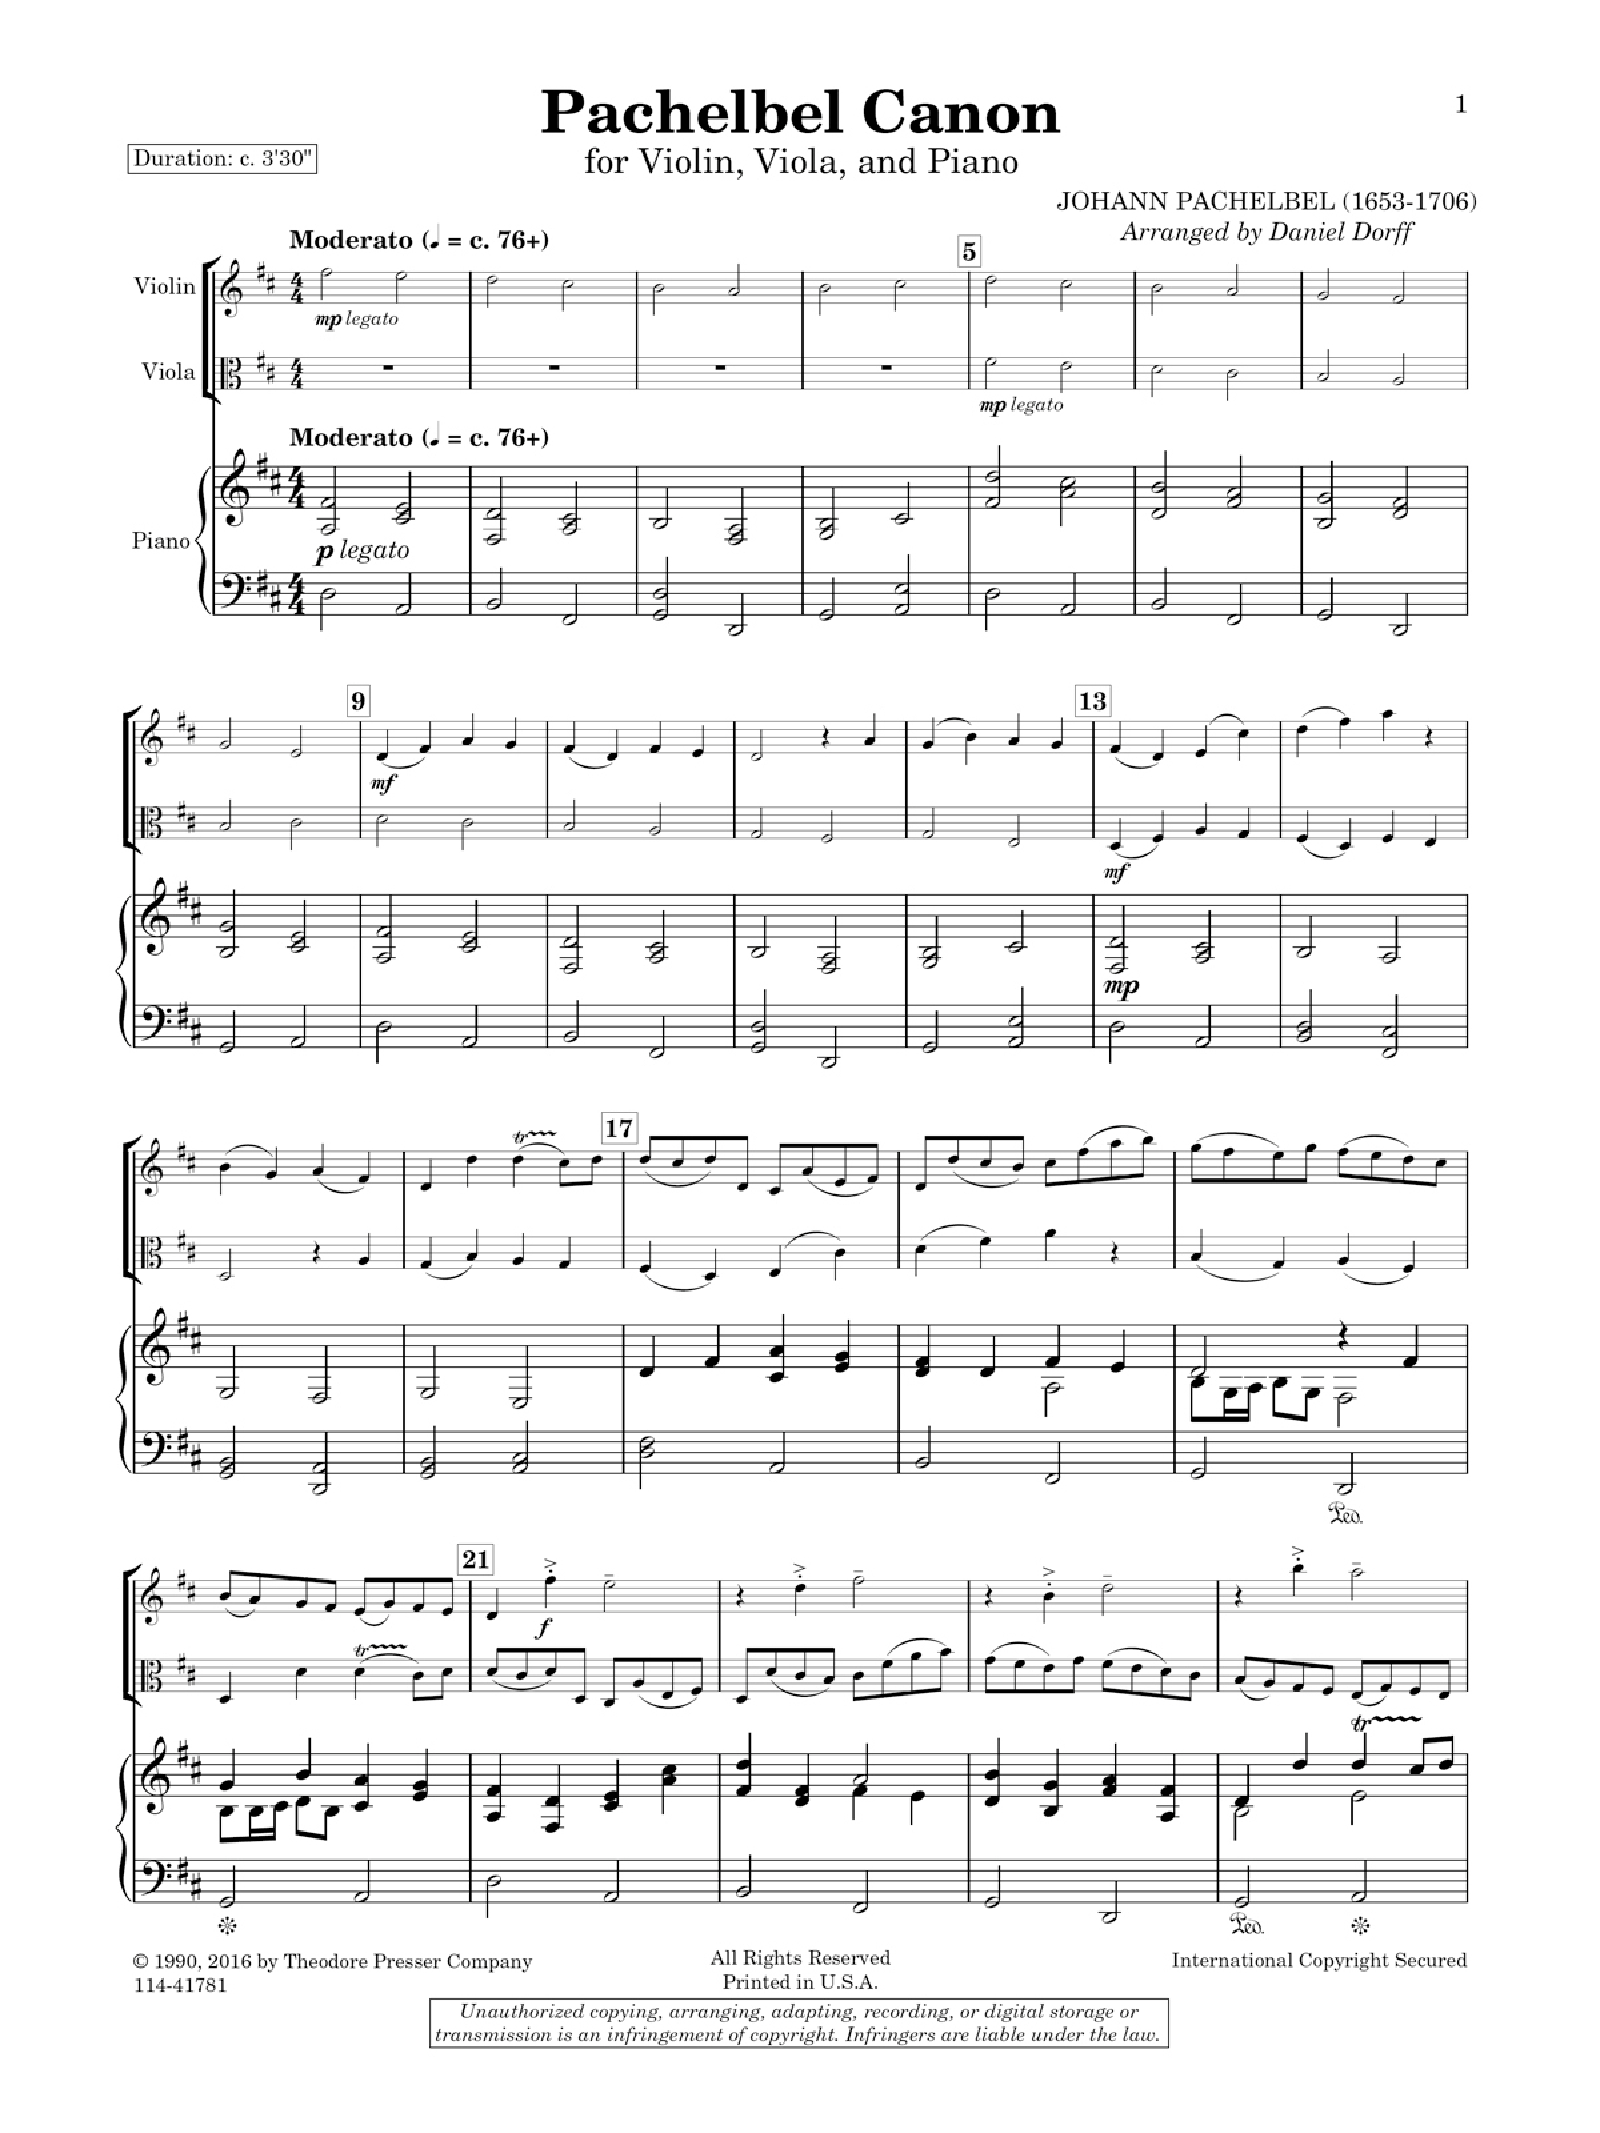 PACHELBEL CANON Violin Viola and Piano Trio